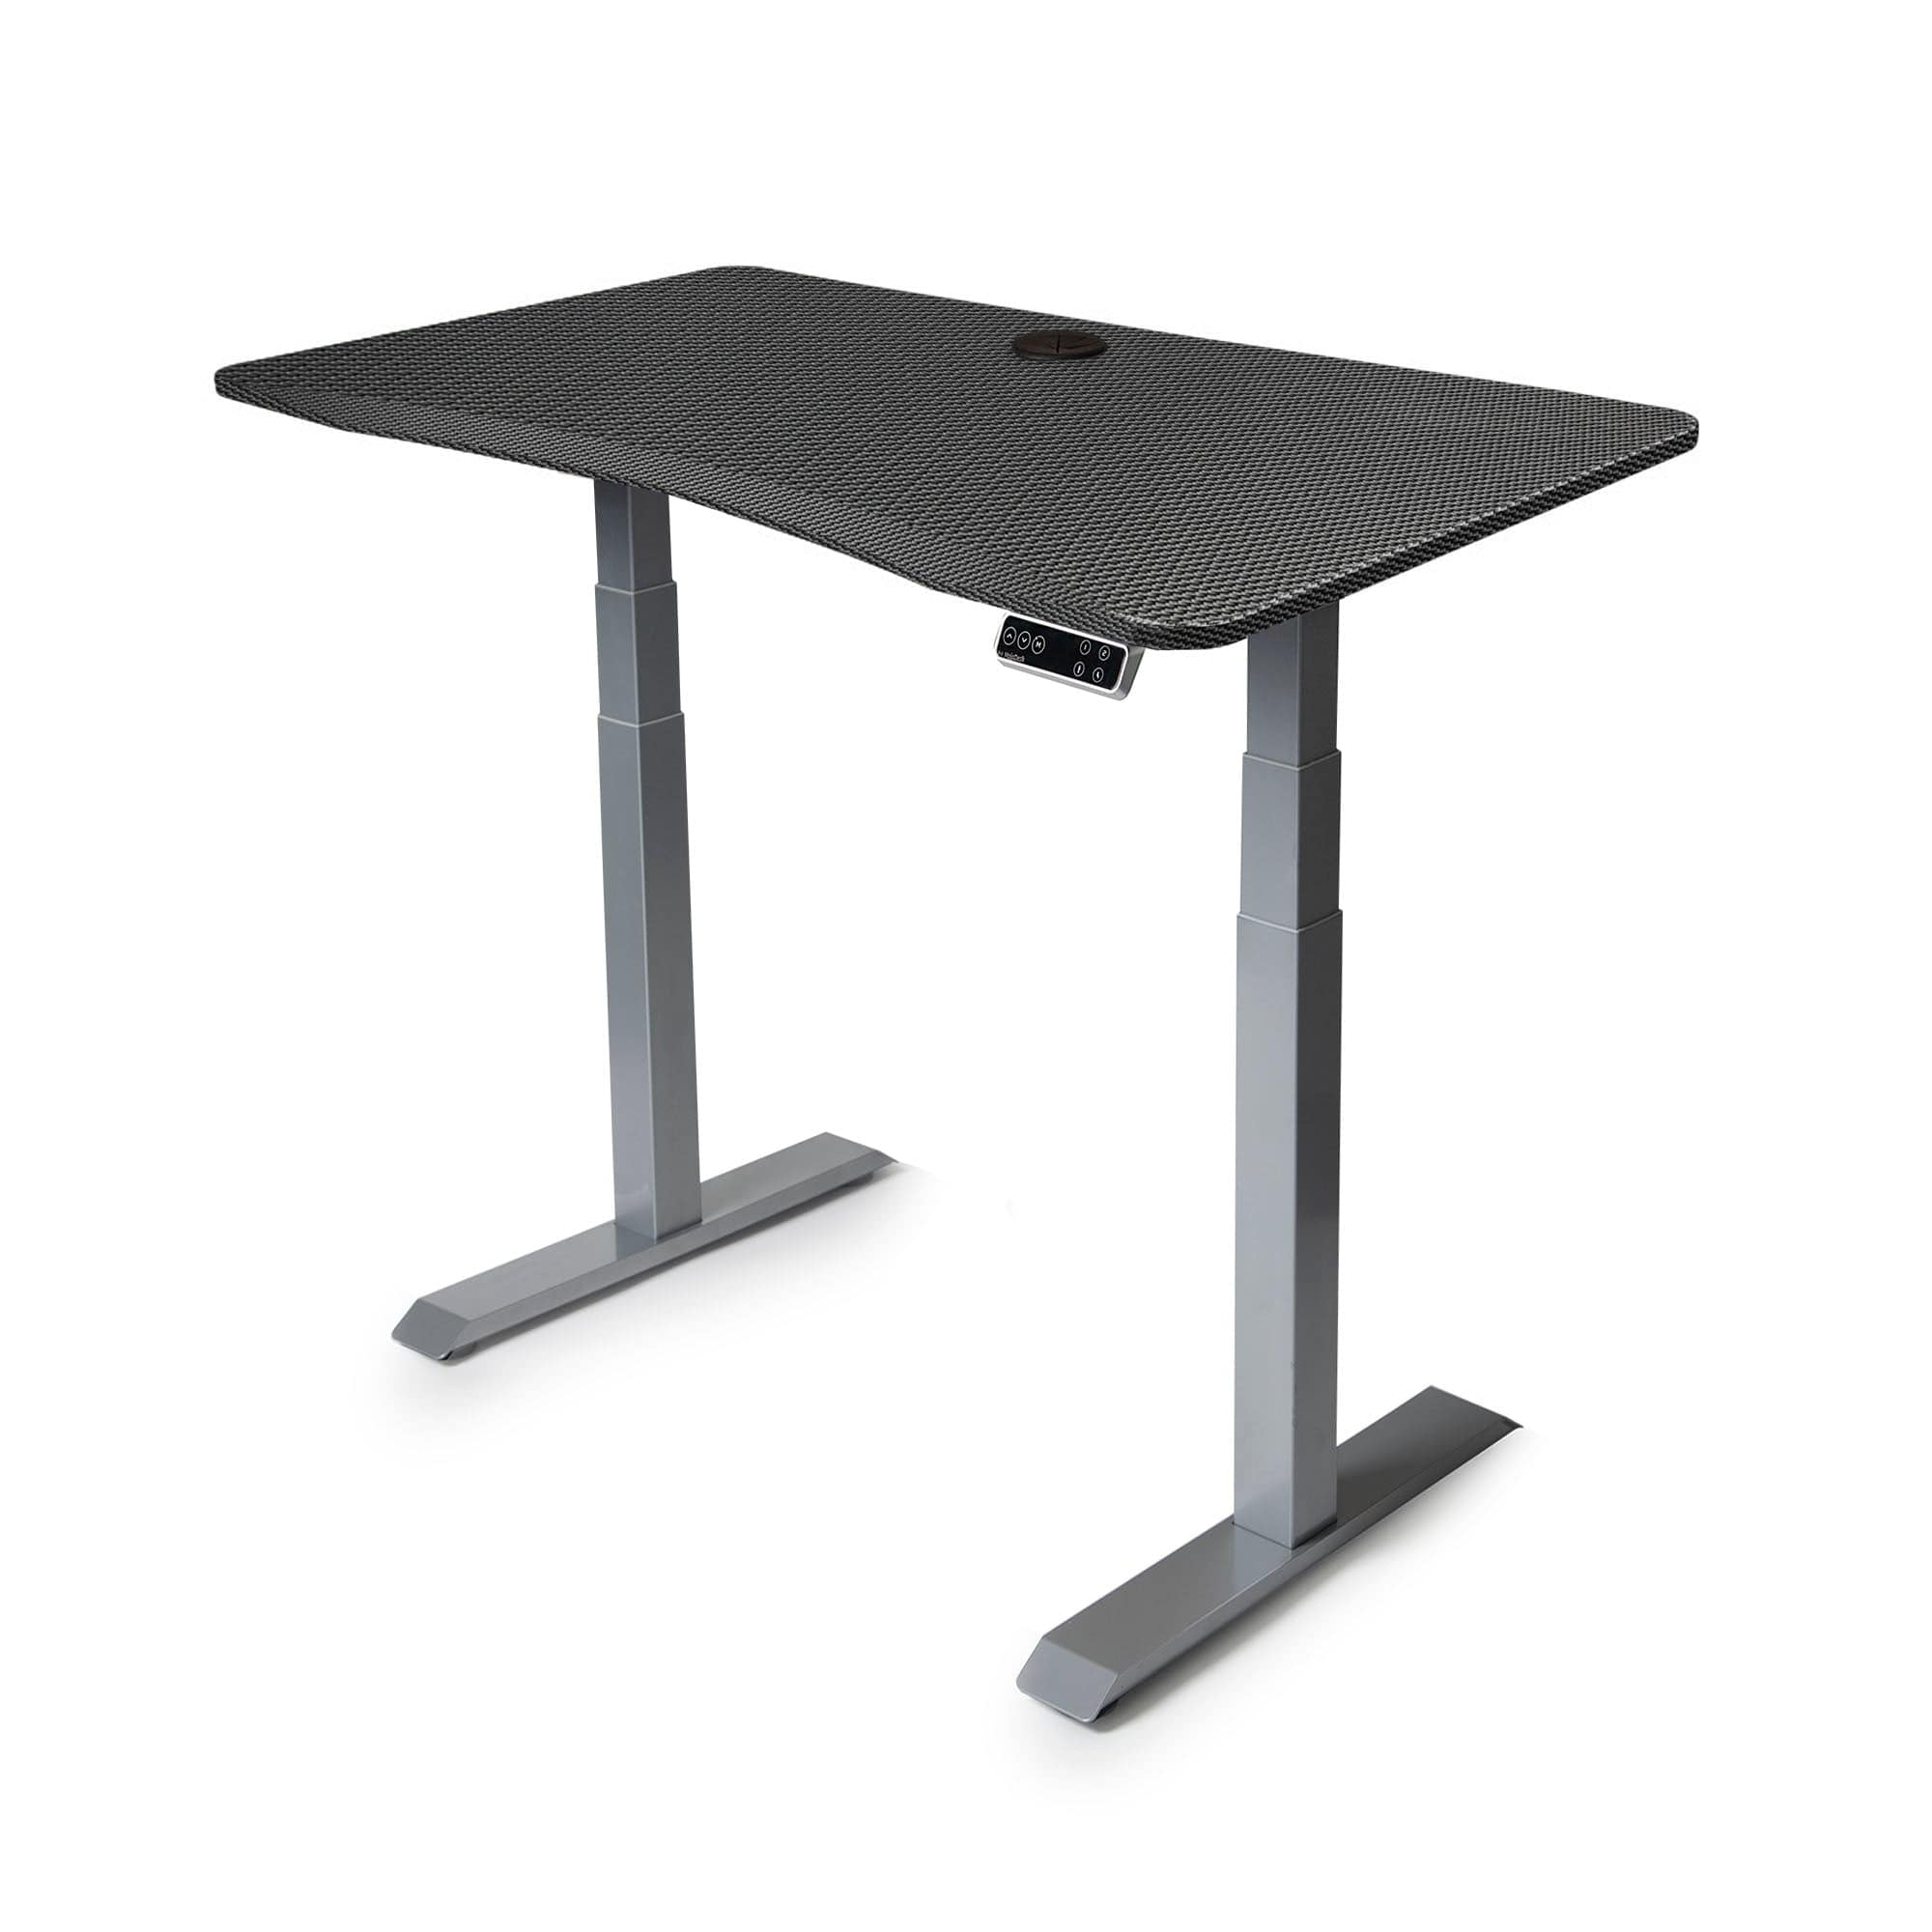 MojoDesk Bundle: Desk + 2 Accessories - Carbon Fiber Non Epicor Standing Desk Bundle 45.5x27 / Gray Base / Carbon Fiber